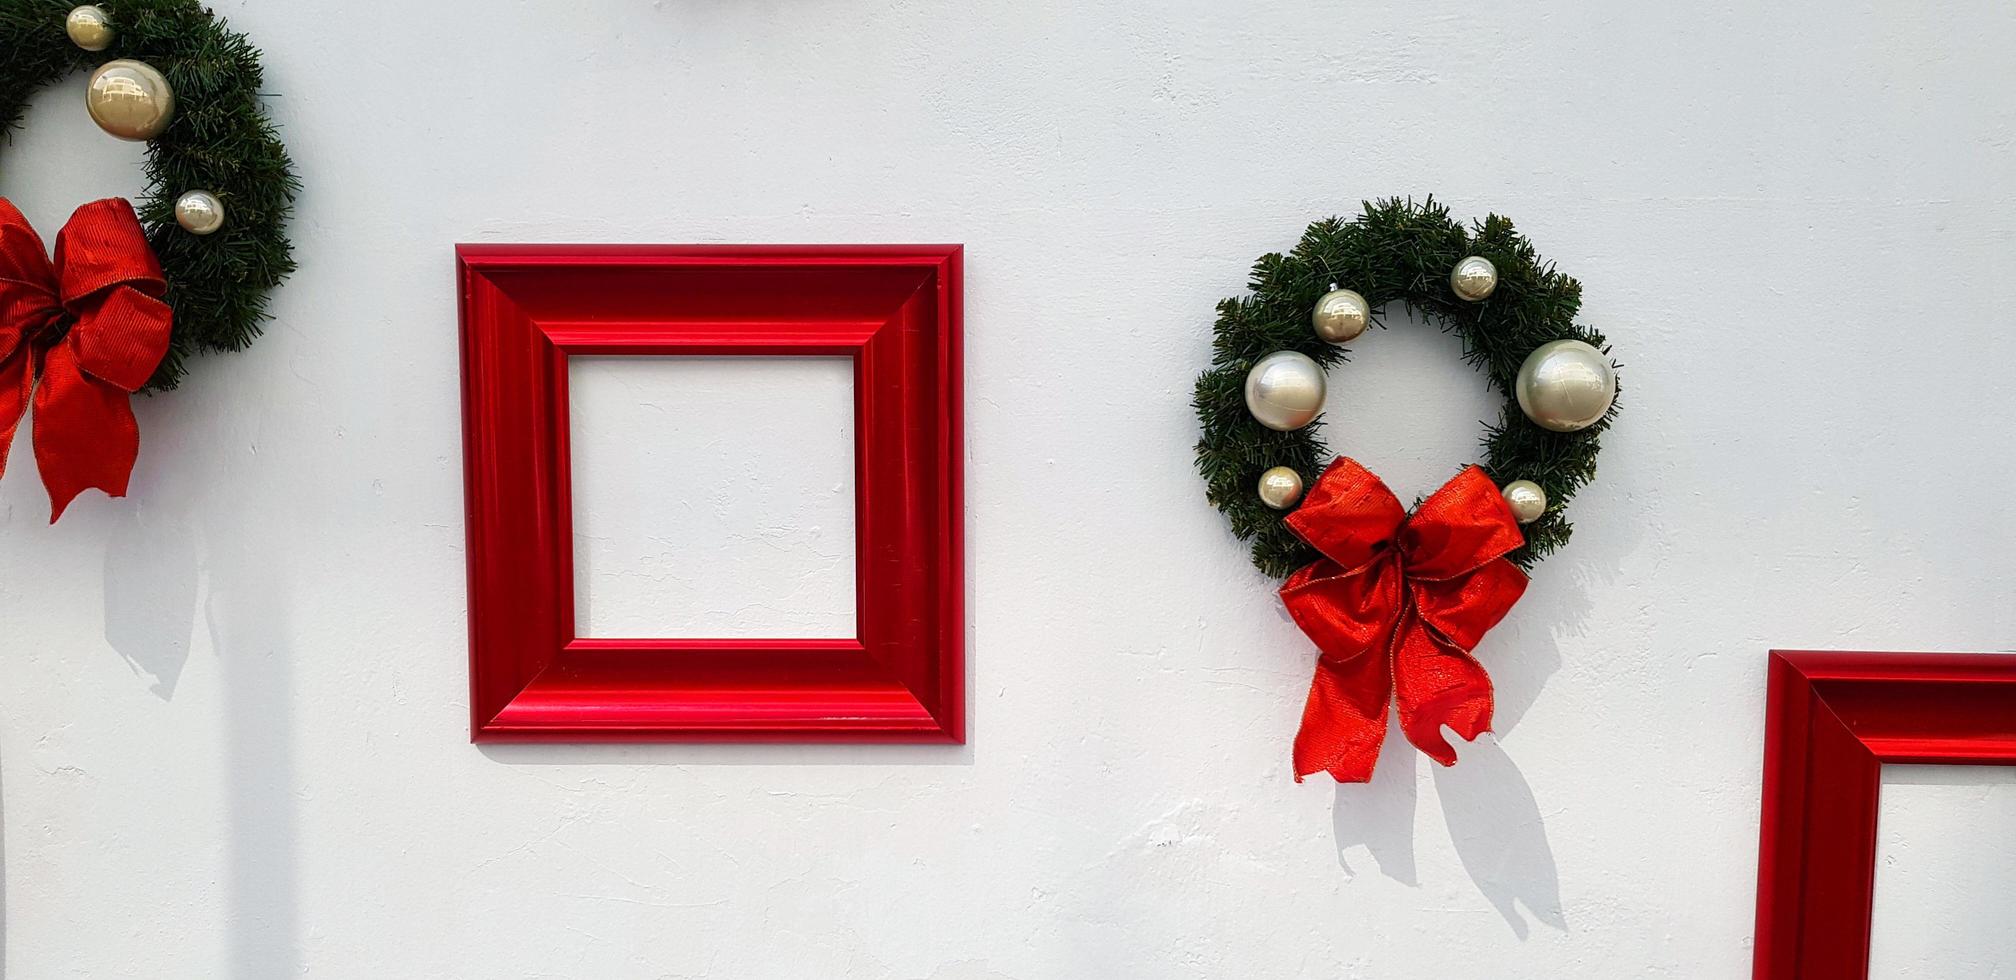 Kerstmis, gelukkig nieuwjaar krans decoratie met rood lint, witte bal en rode afbeeldingsframe voor het toevoegen van formulering geïsoleerd op een witte muur achtergrond. object voor ingericht feest, festival met kopieerruimte. foto